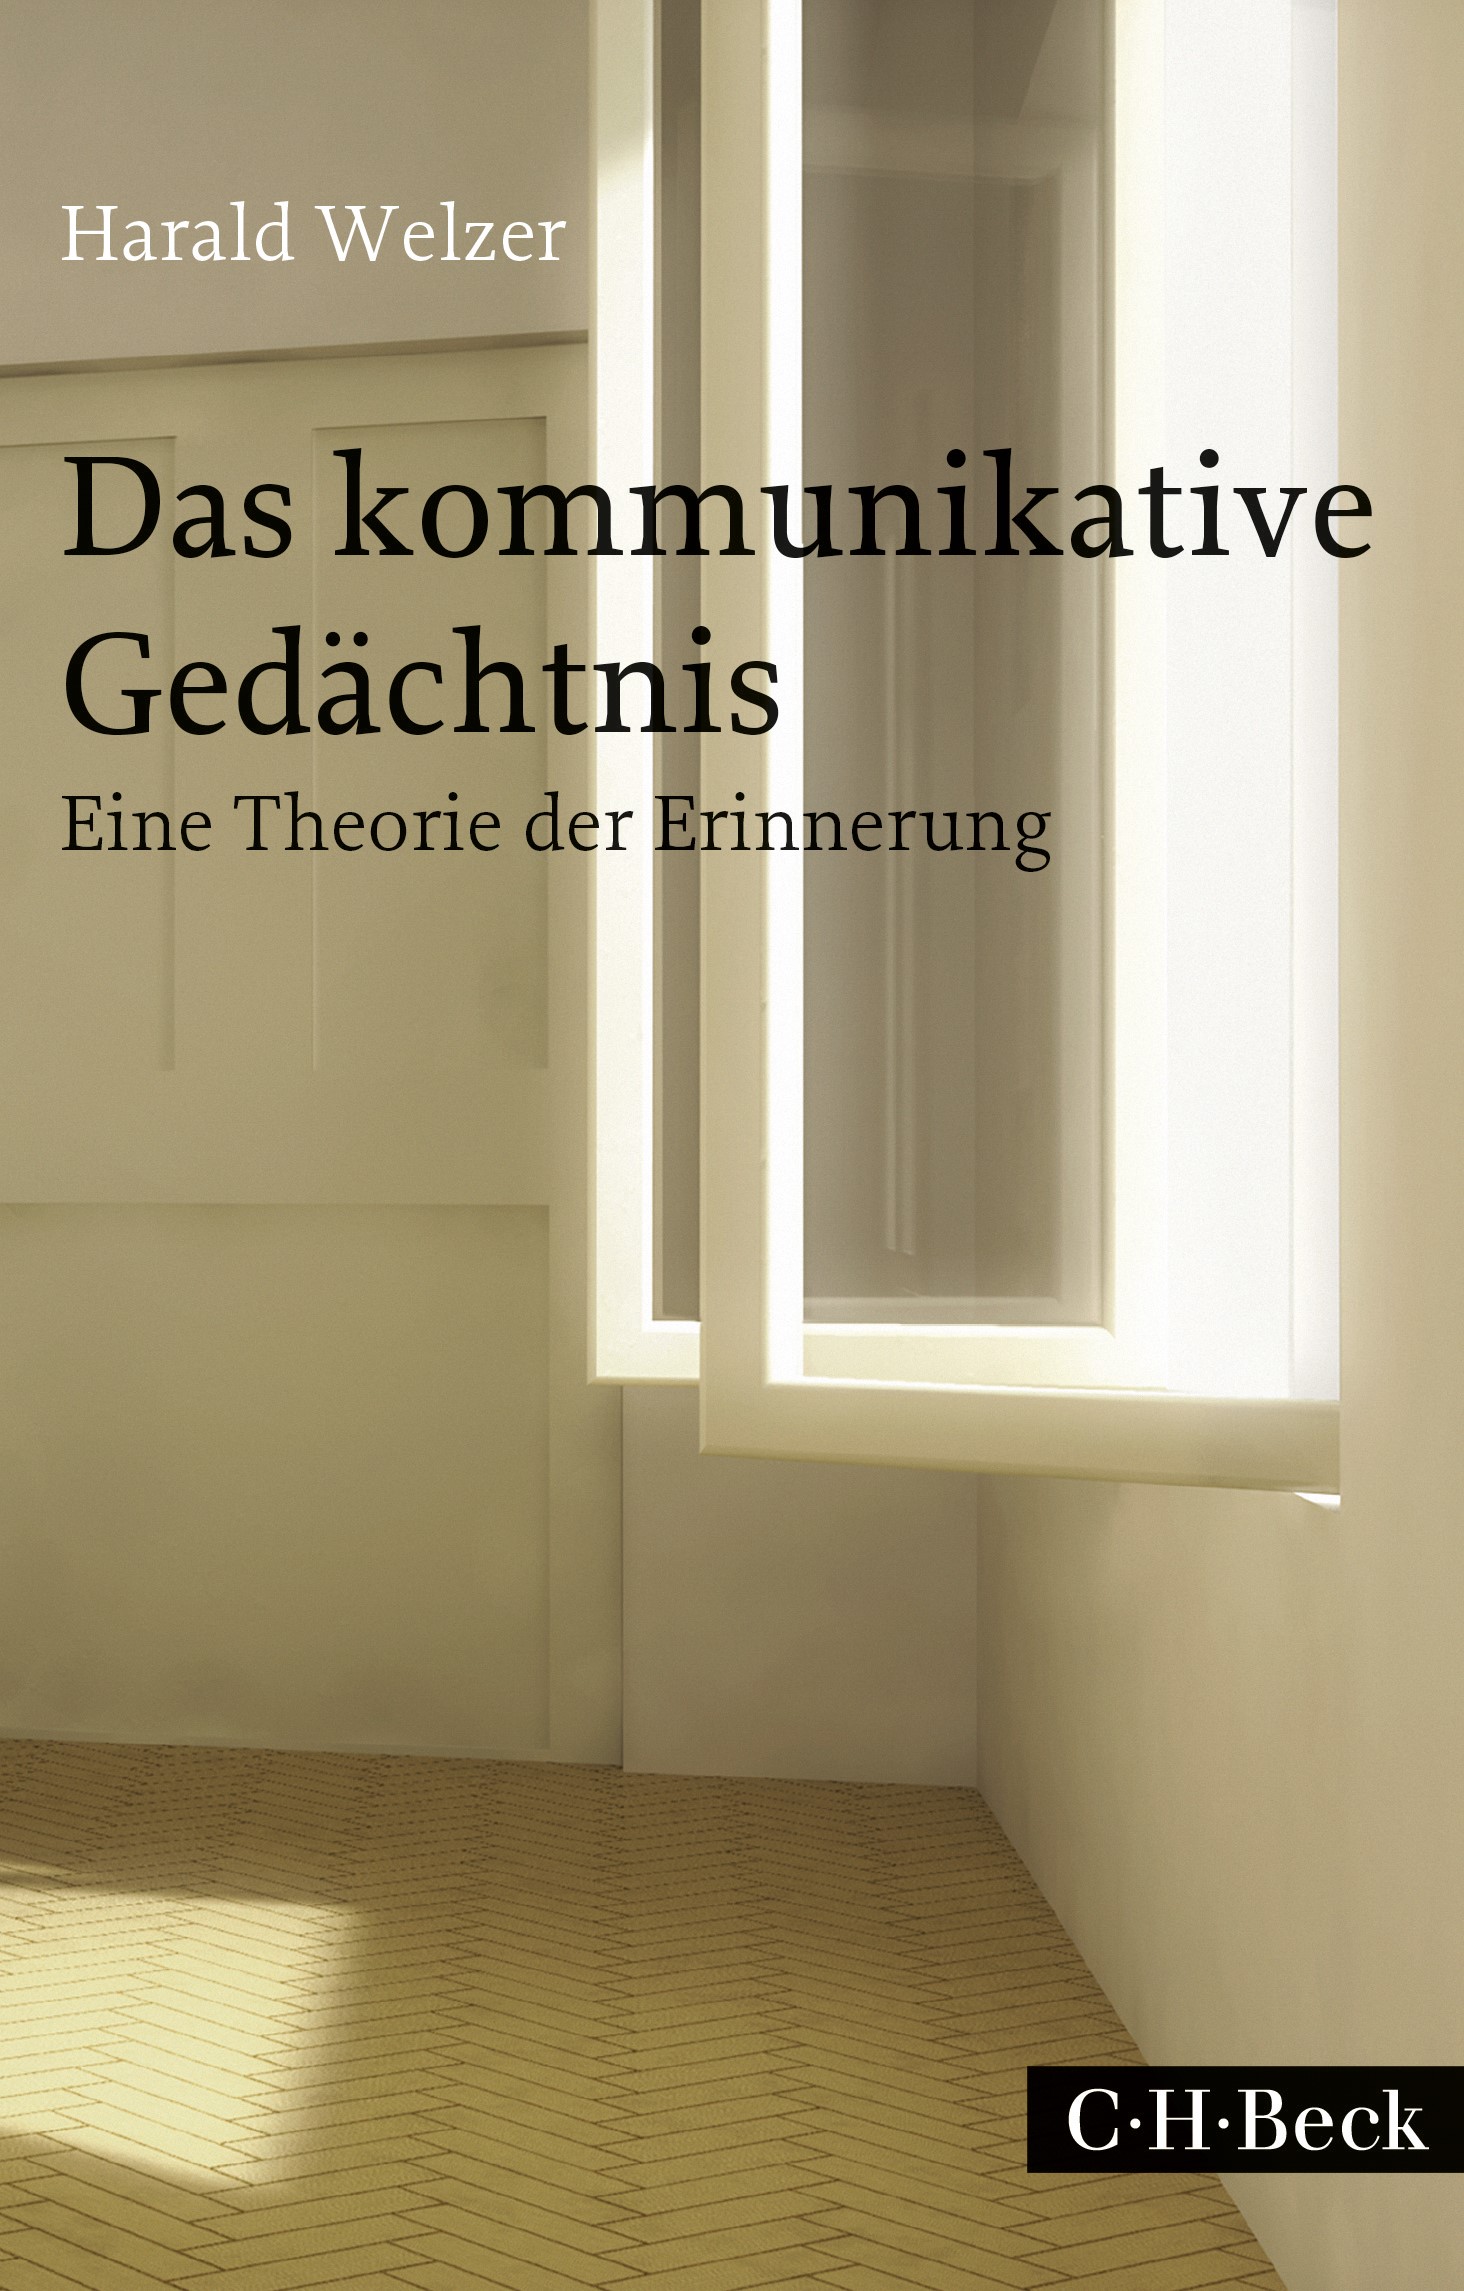 Cover: Welzer, Harald, Das kommunikative Gedächtnis